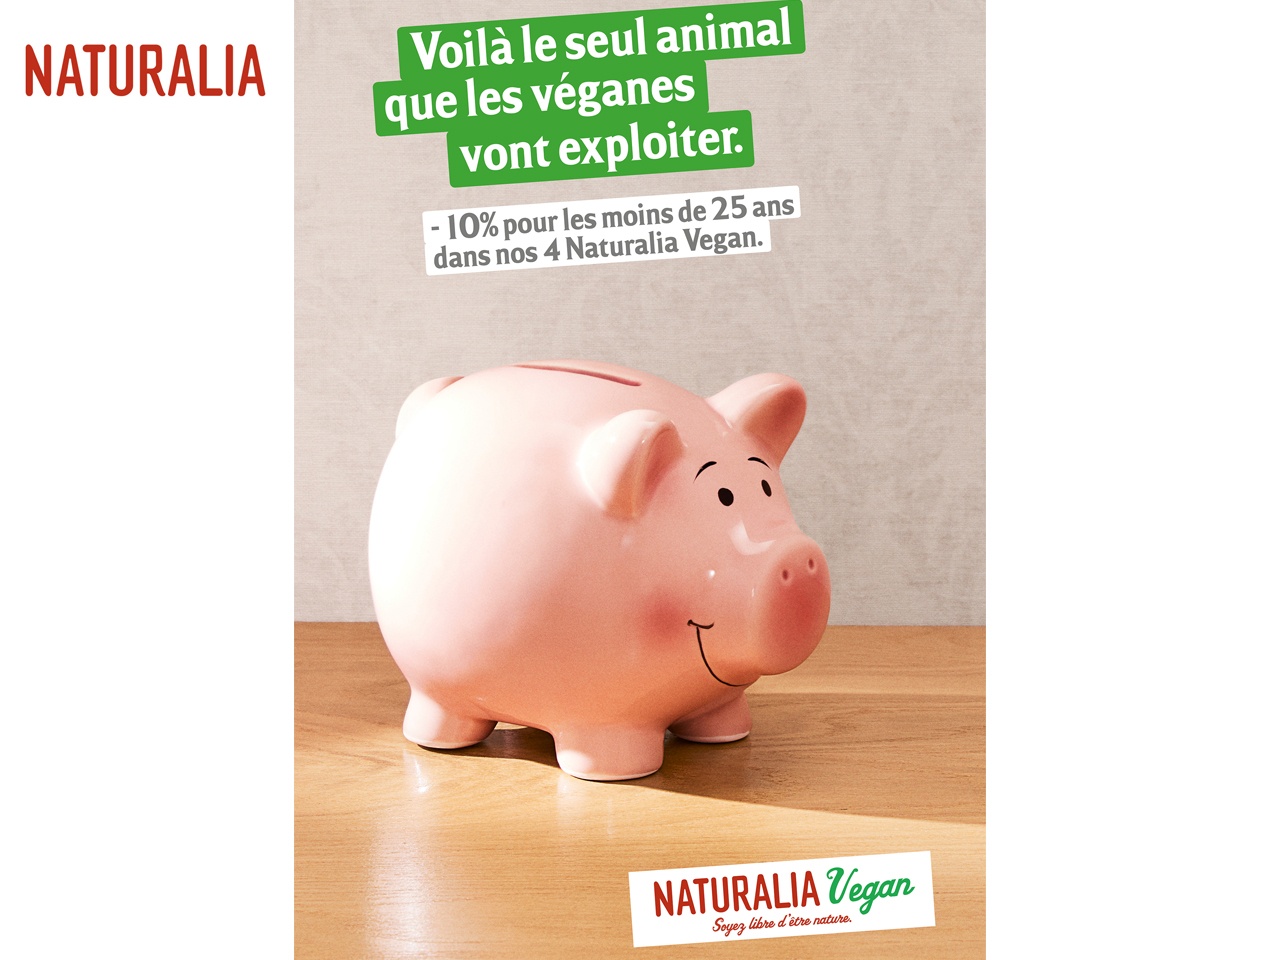 Naturalia Vegan gagne le coeur des jeunes parisiens avec son Pass Vegano